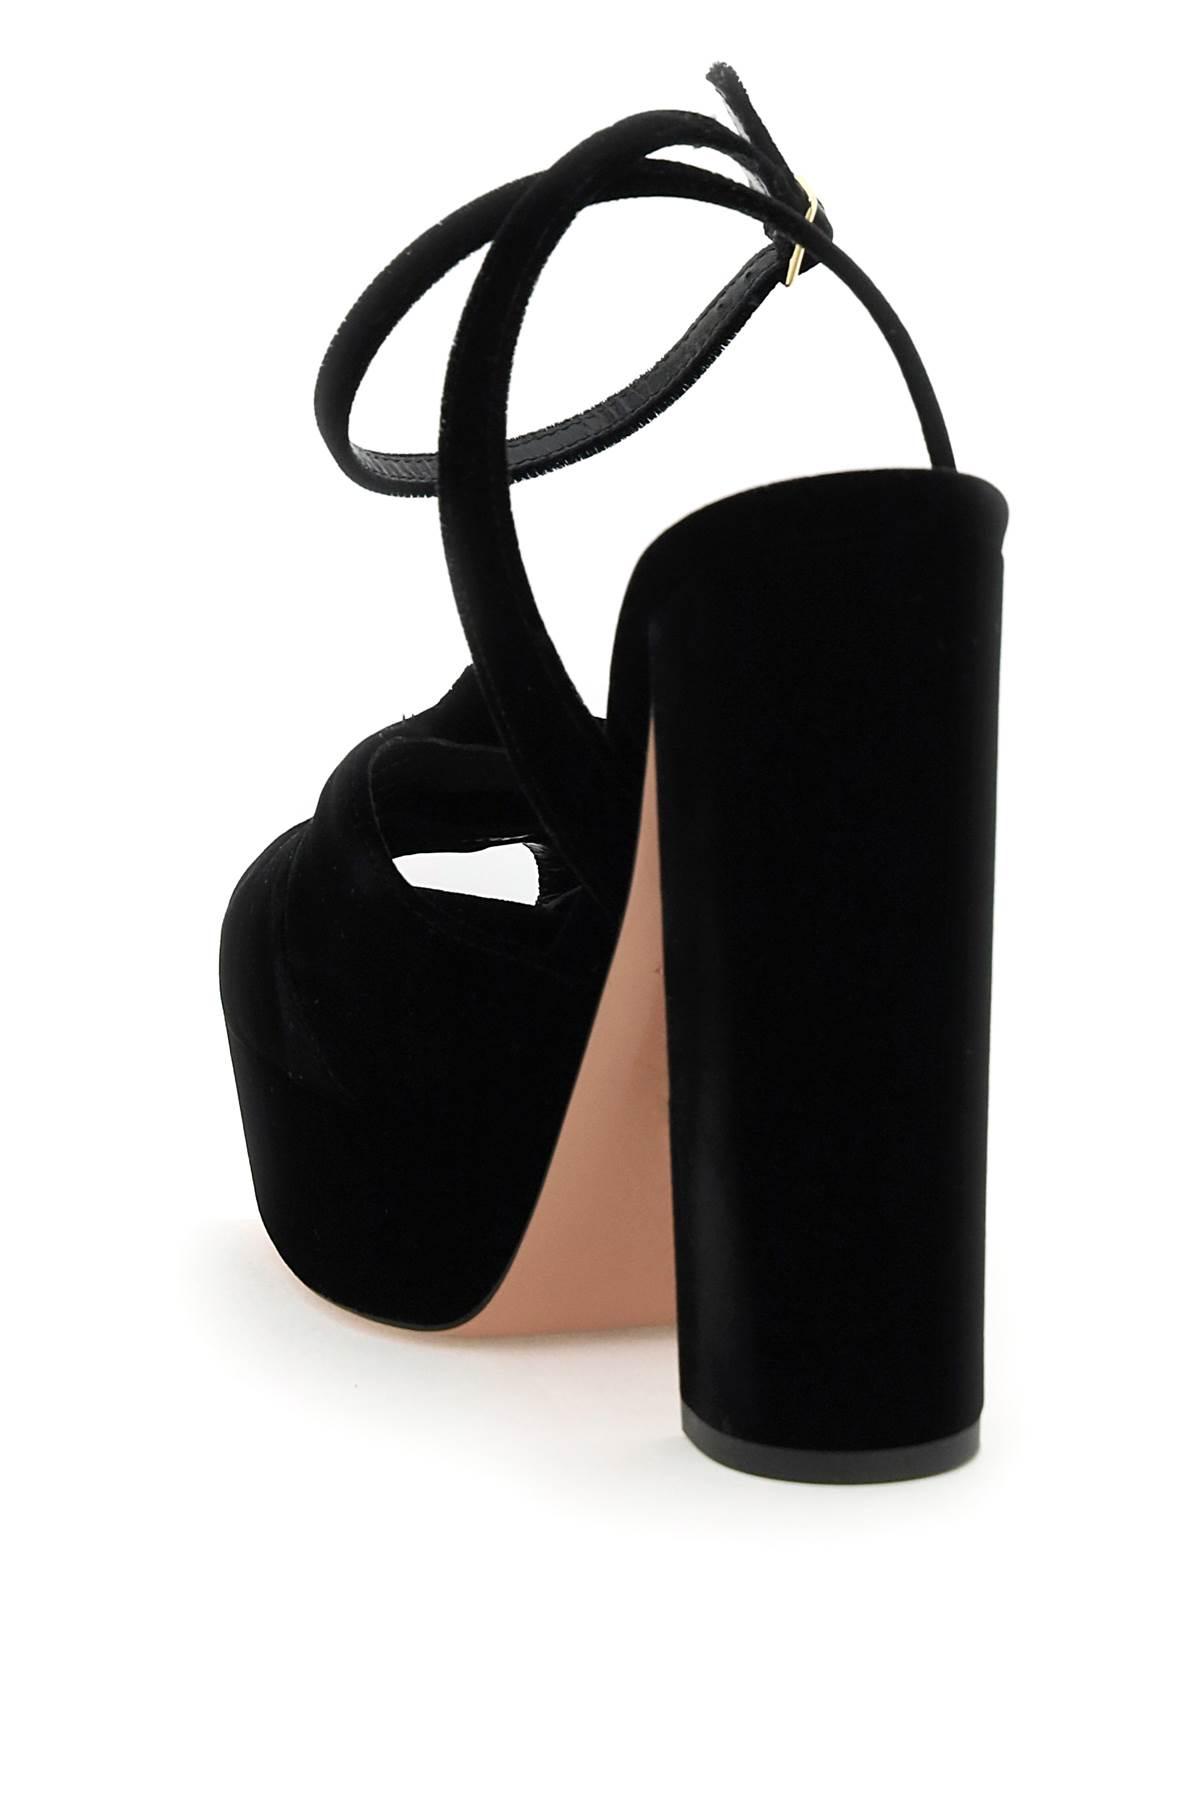 Aquazzura Mira 140 Sandals in Black | Lyst